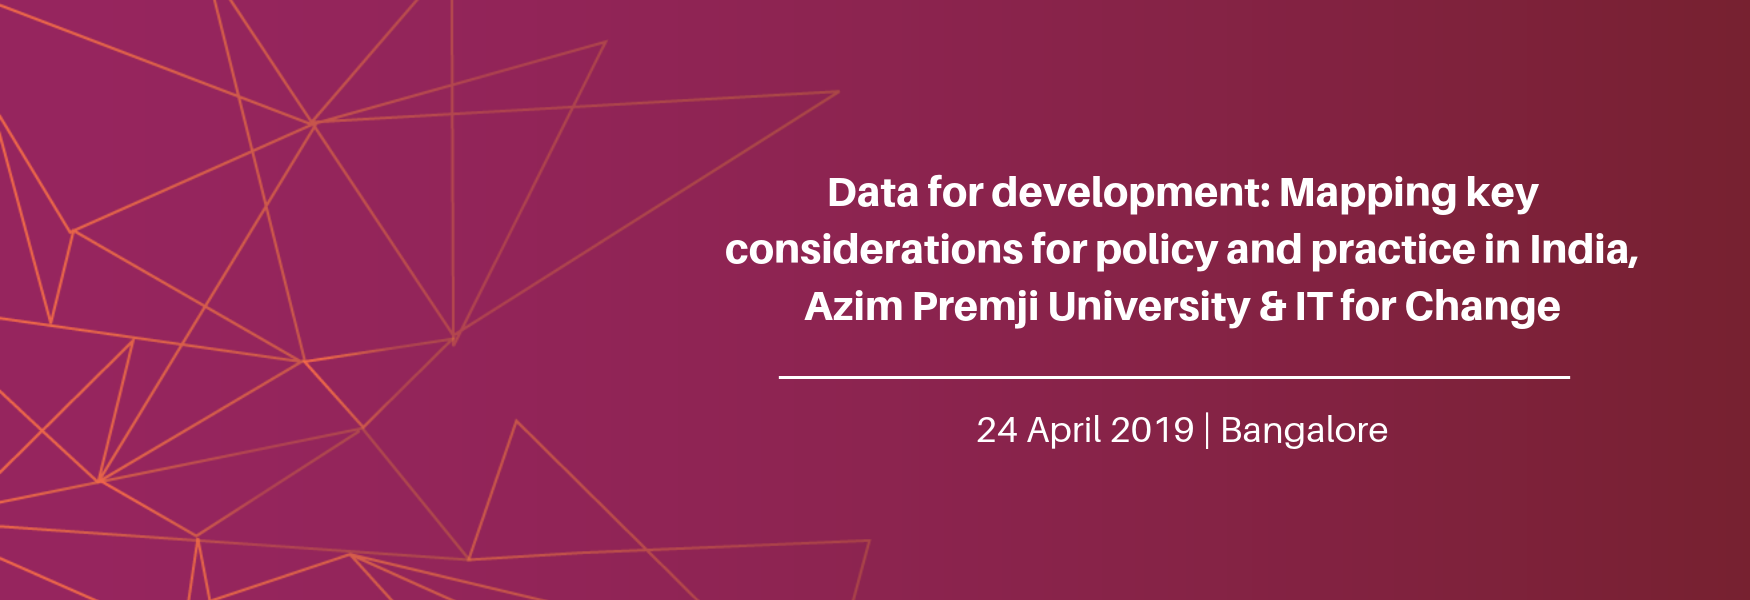 Data for development banner